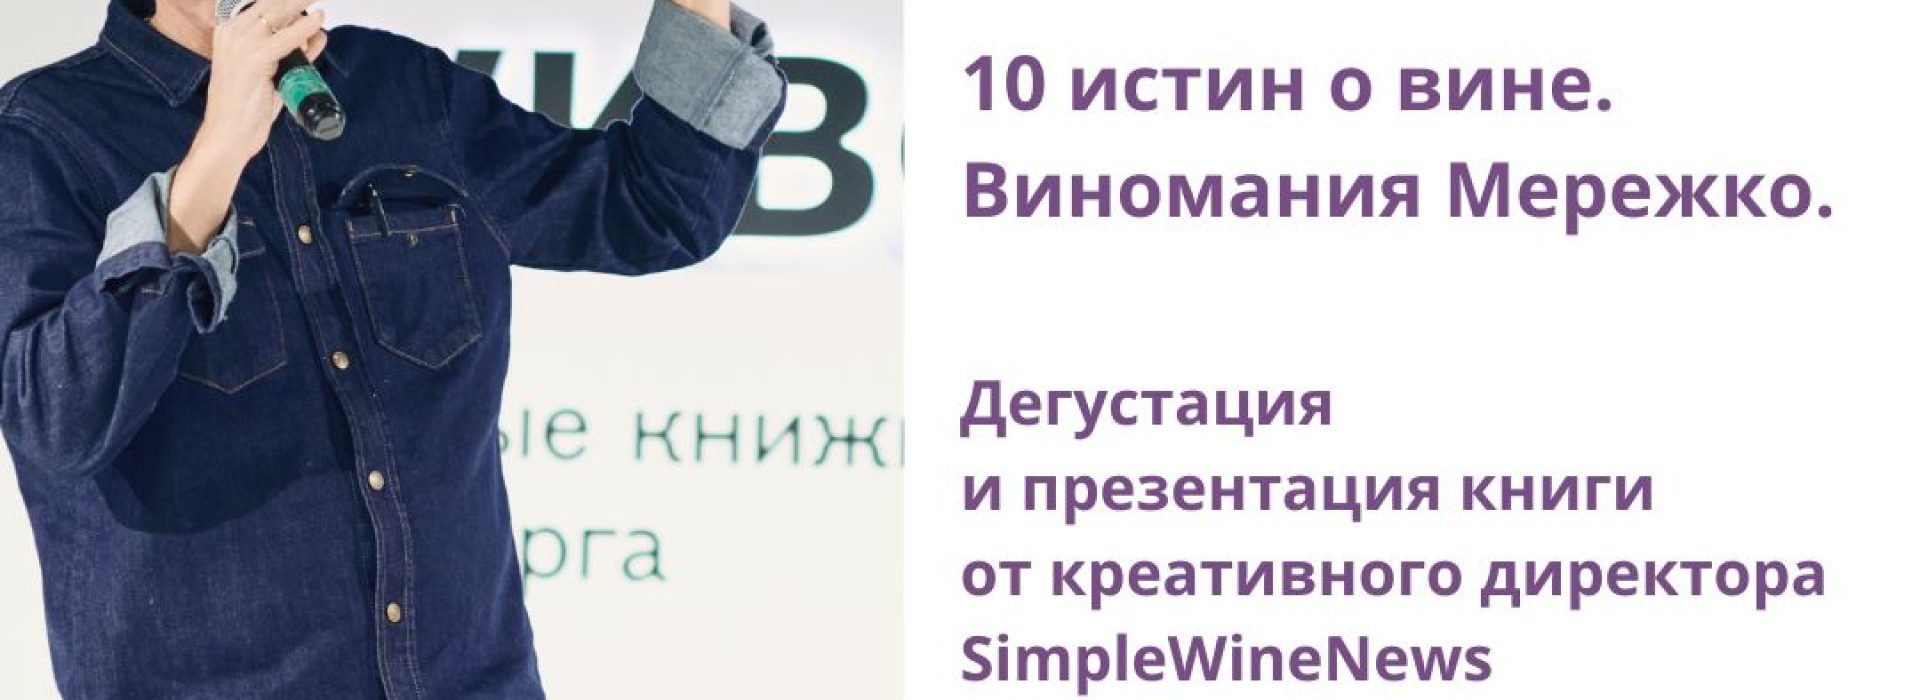 10 истин о вине. Виномания Мережко.